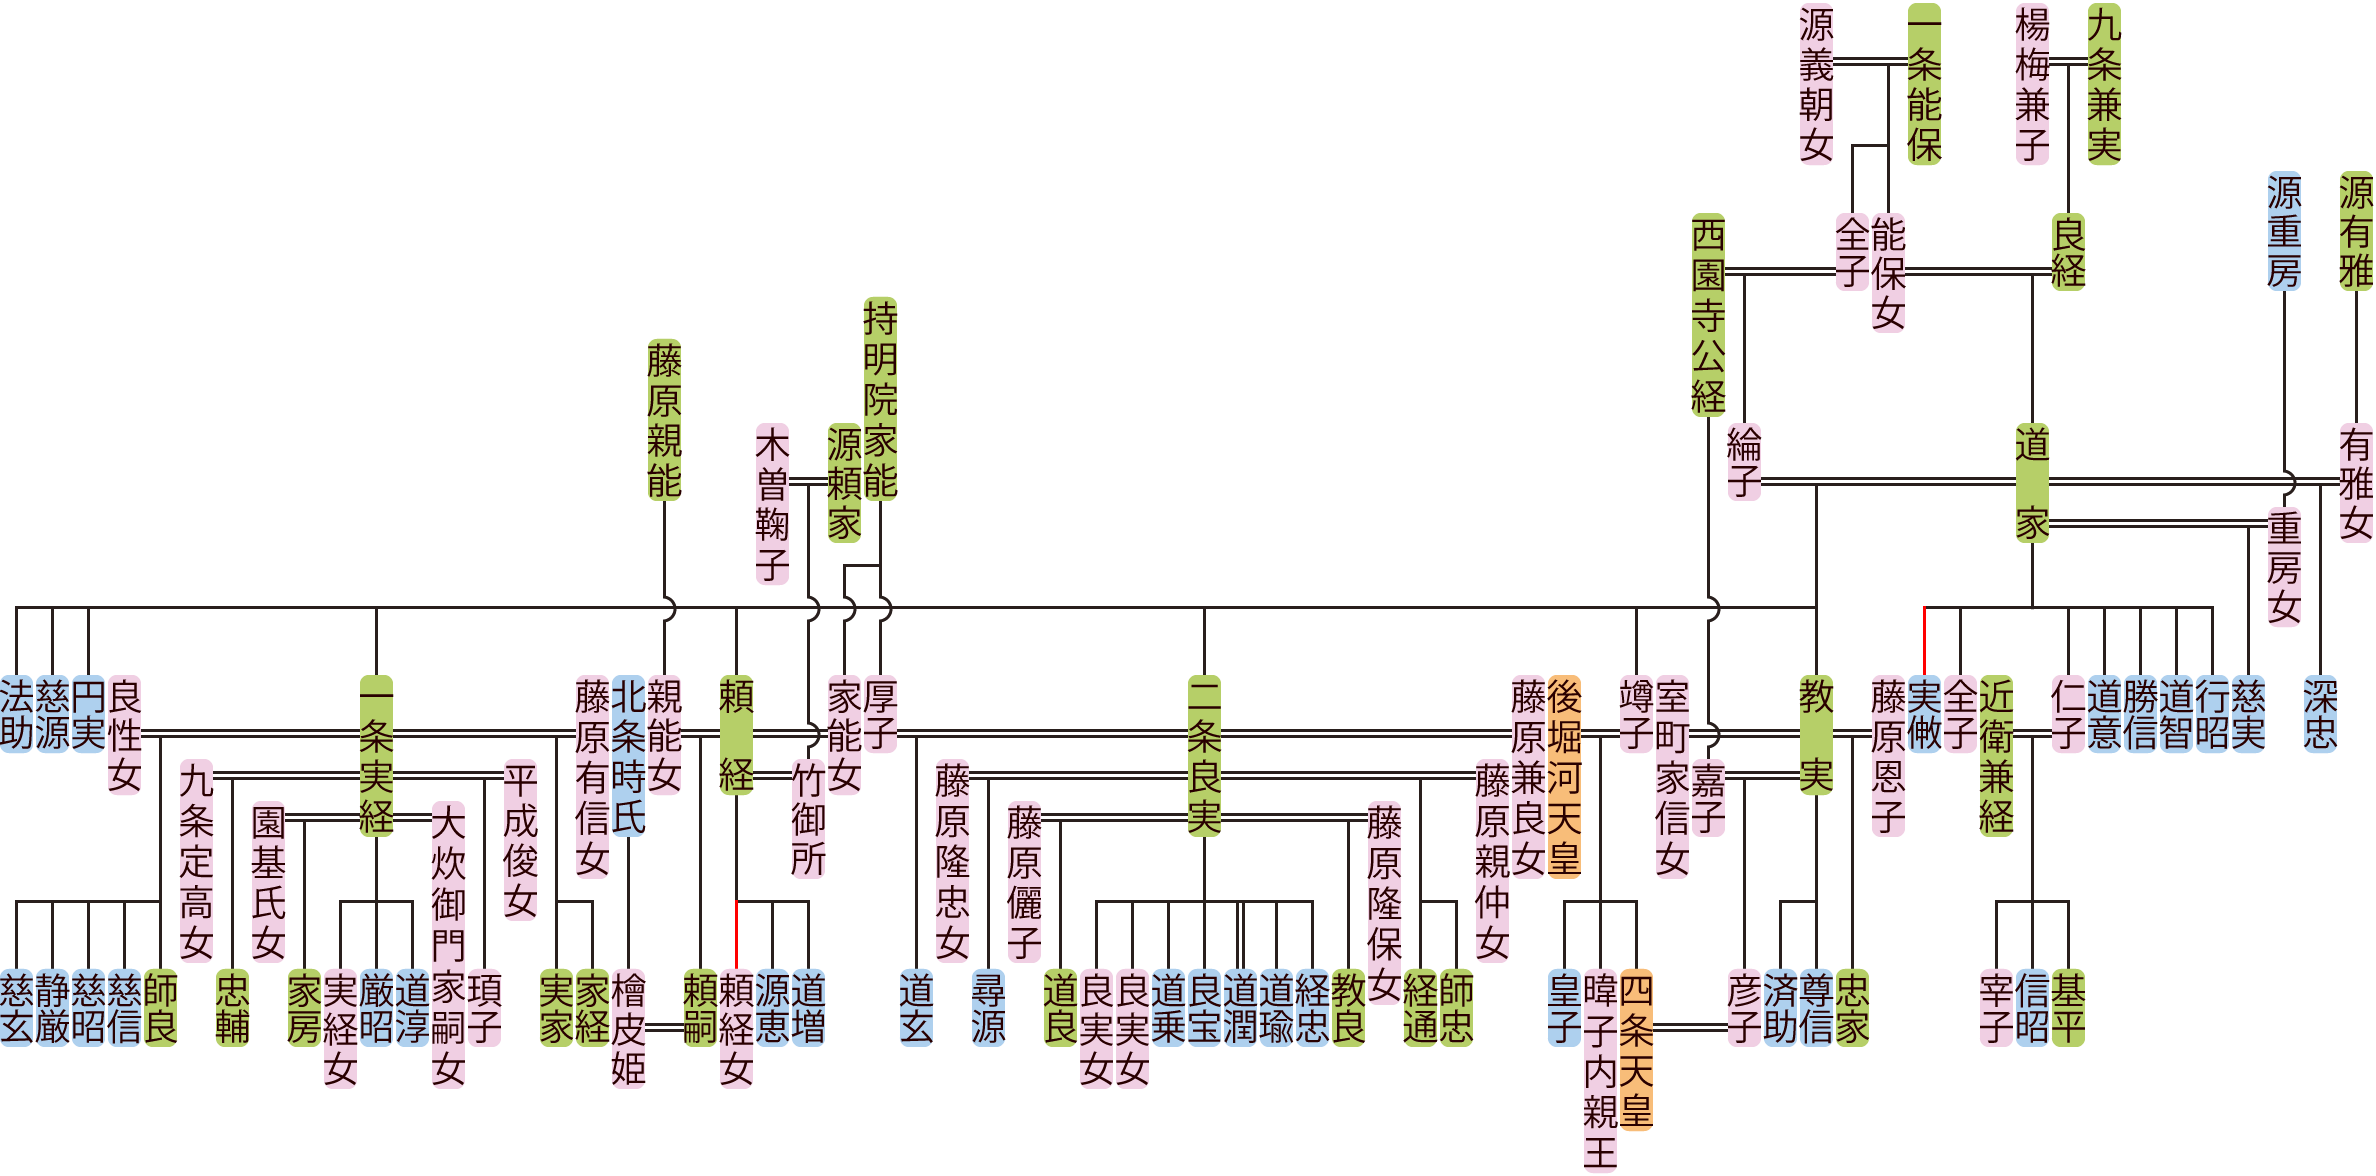 九条道家の系図